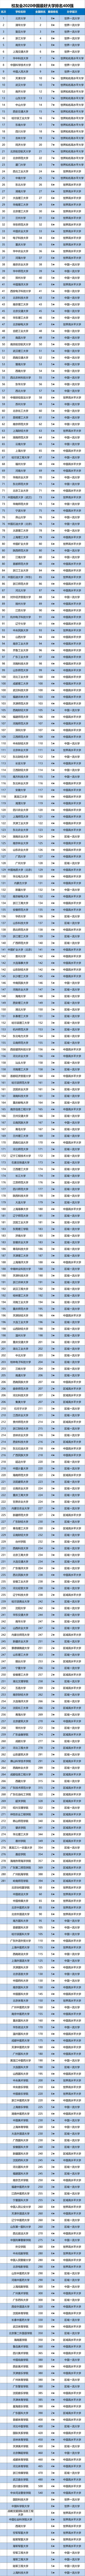 2020年新疆最好大学_校友会2020中国大学排名1200强出炉,上海交通大学跻身